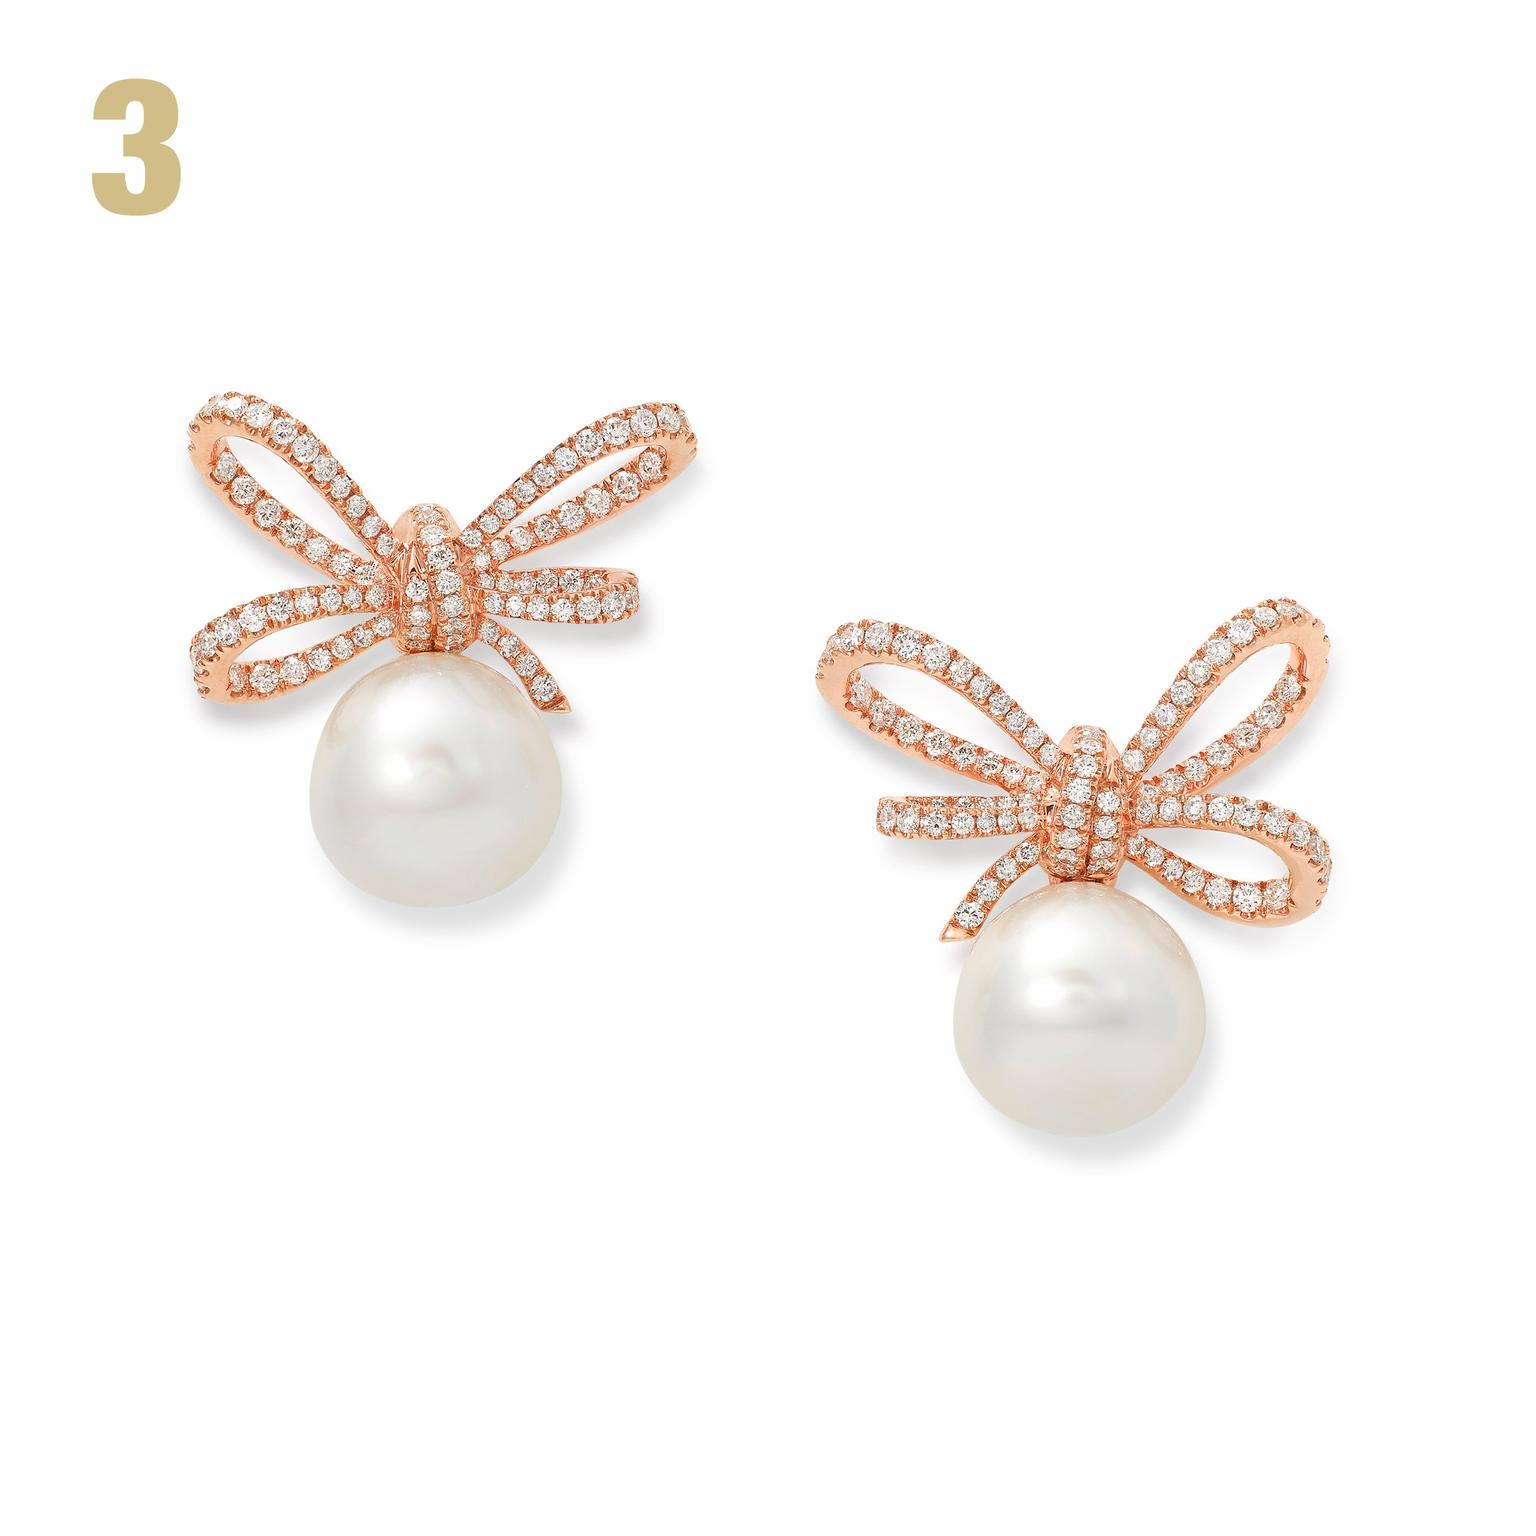 VanLeles diamond and pearl earrings